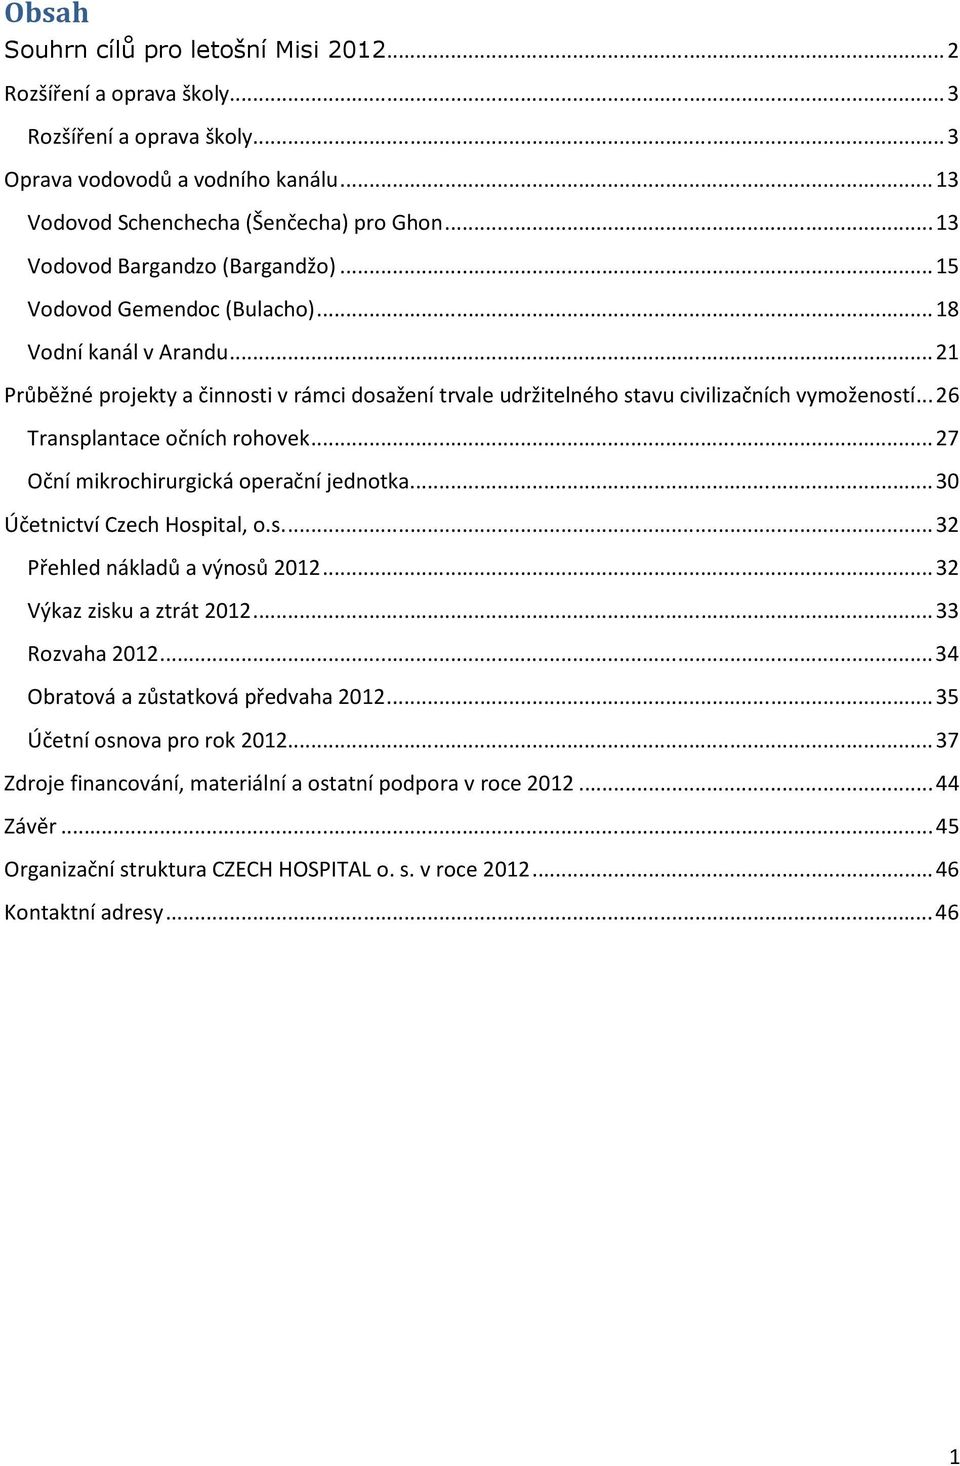 .. 26 Transplantace očních rohovek... 27 Oční mikrochirurgická operační jednotka... 30 Účetnictví Czech Hospital, o.s.... 32 Přehled nákladů a výnosů 2012... 32 Výkaz zisku a ztrát 2012.